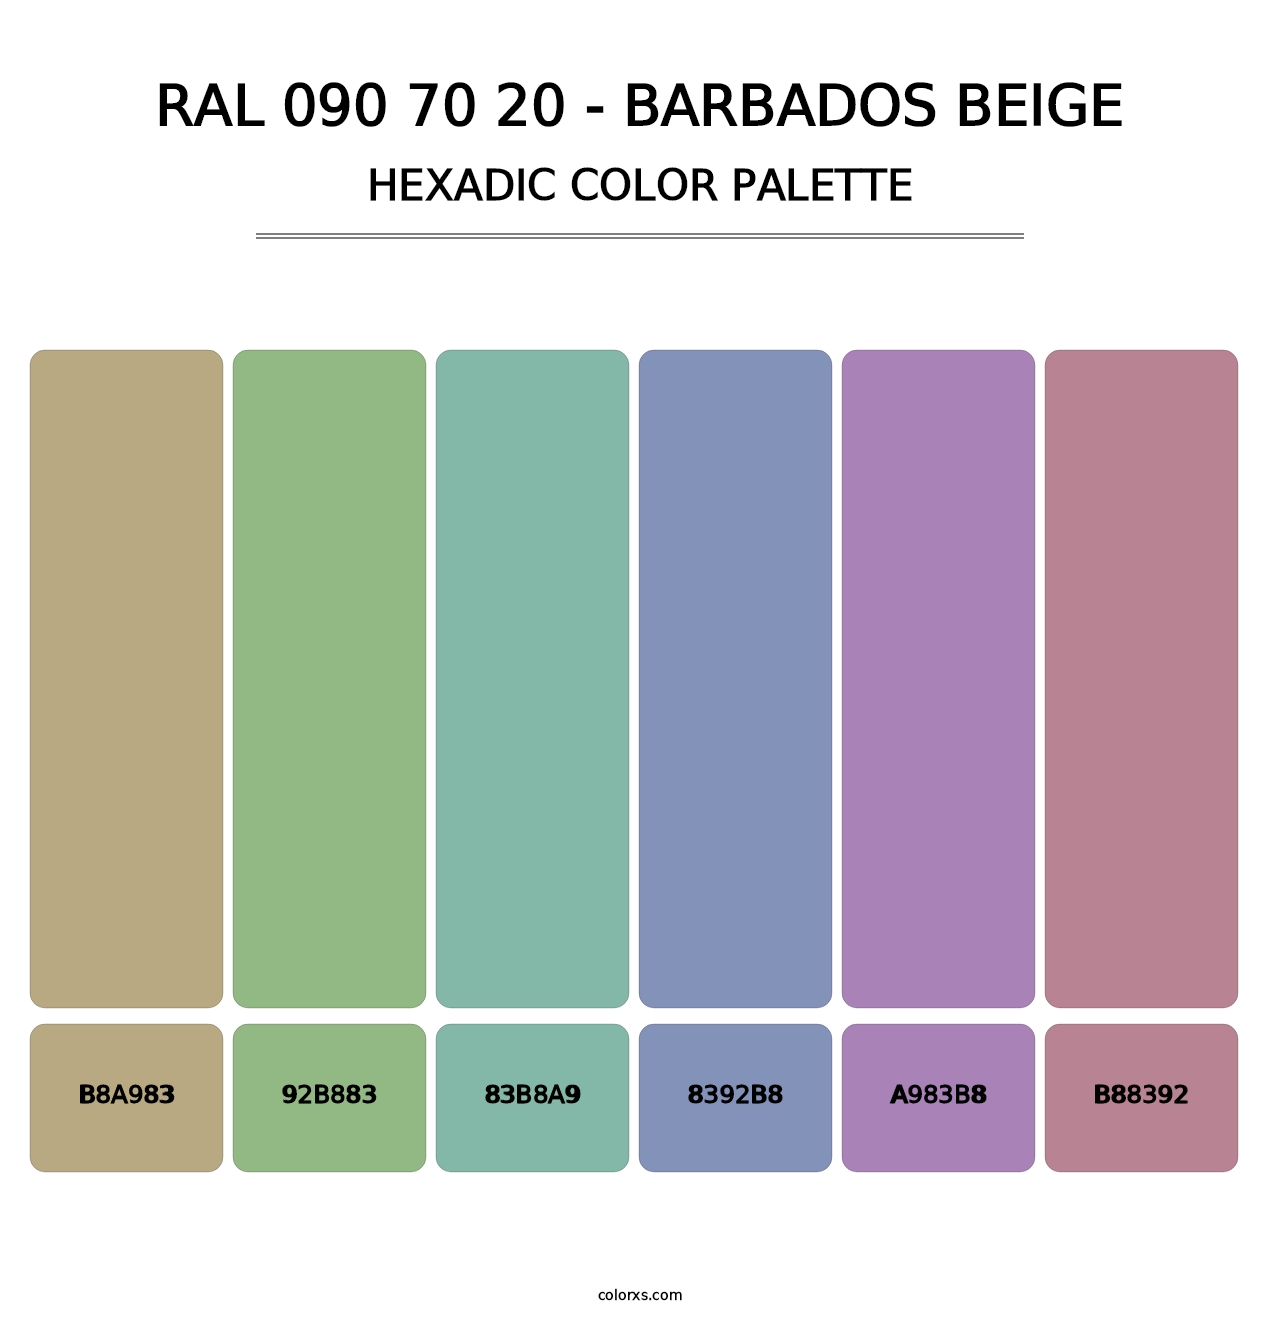 RAL 090 70 20 - Barbados Beige - Hexadic Color Palette